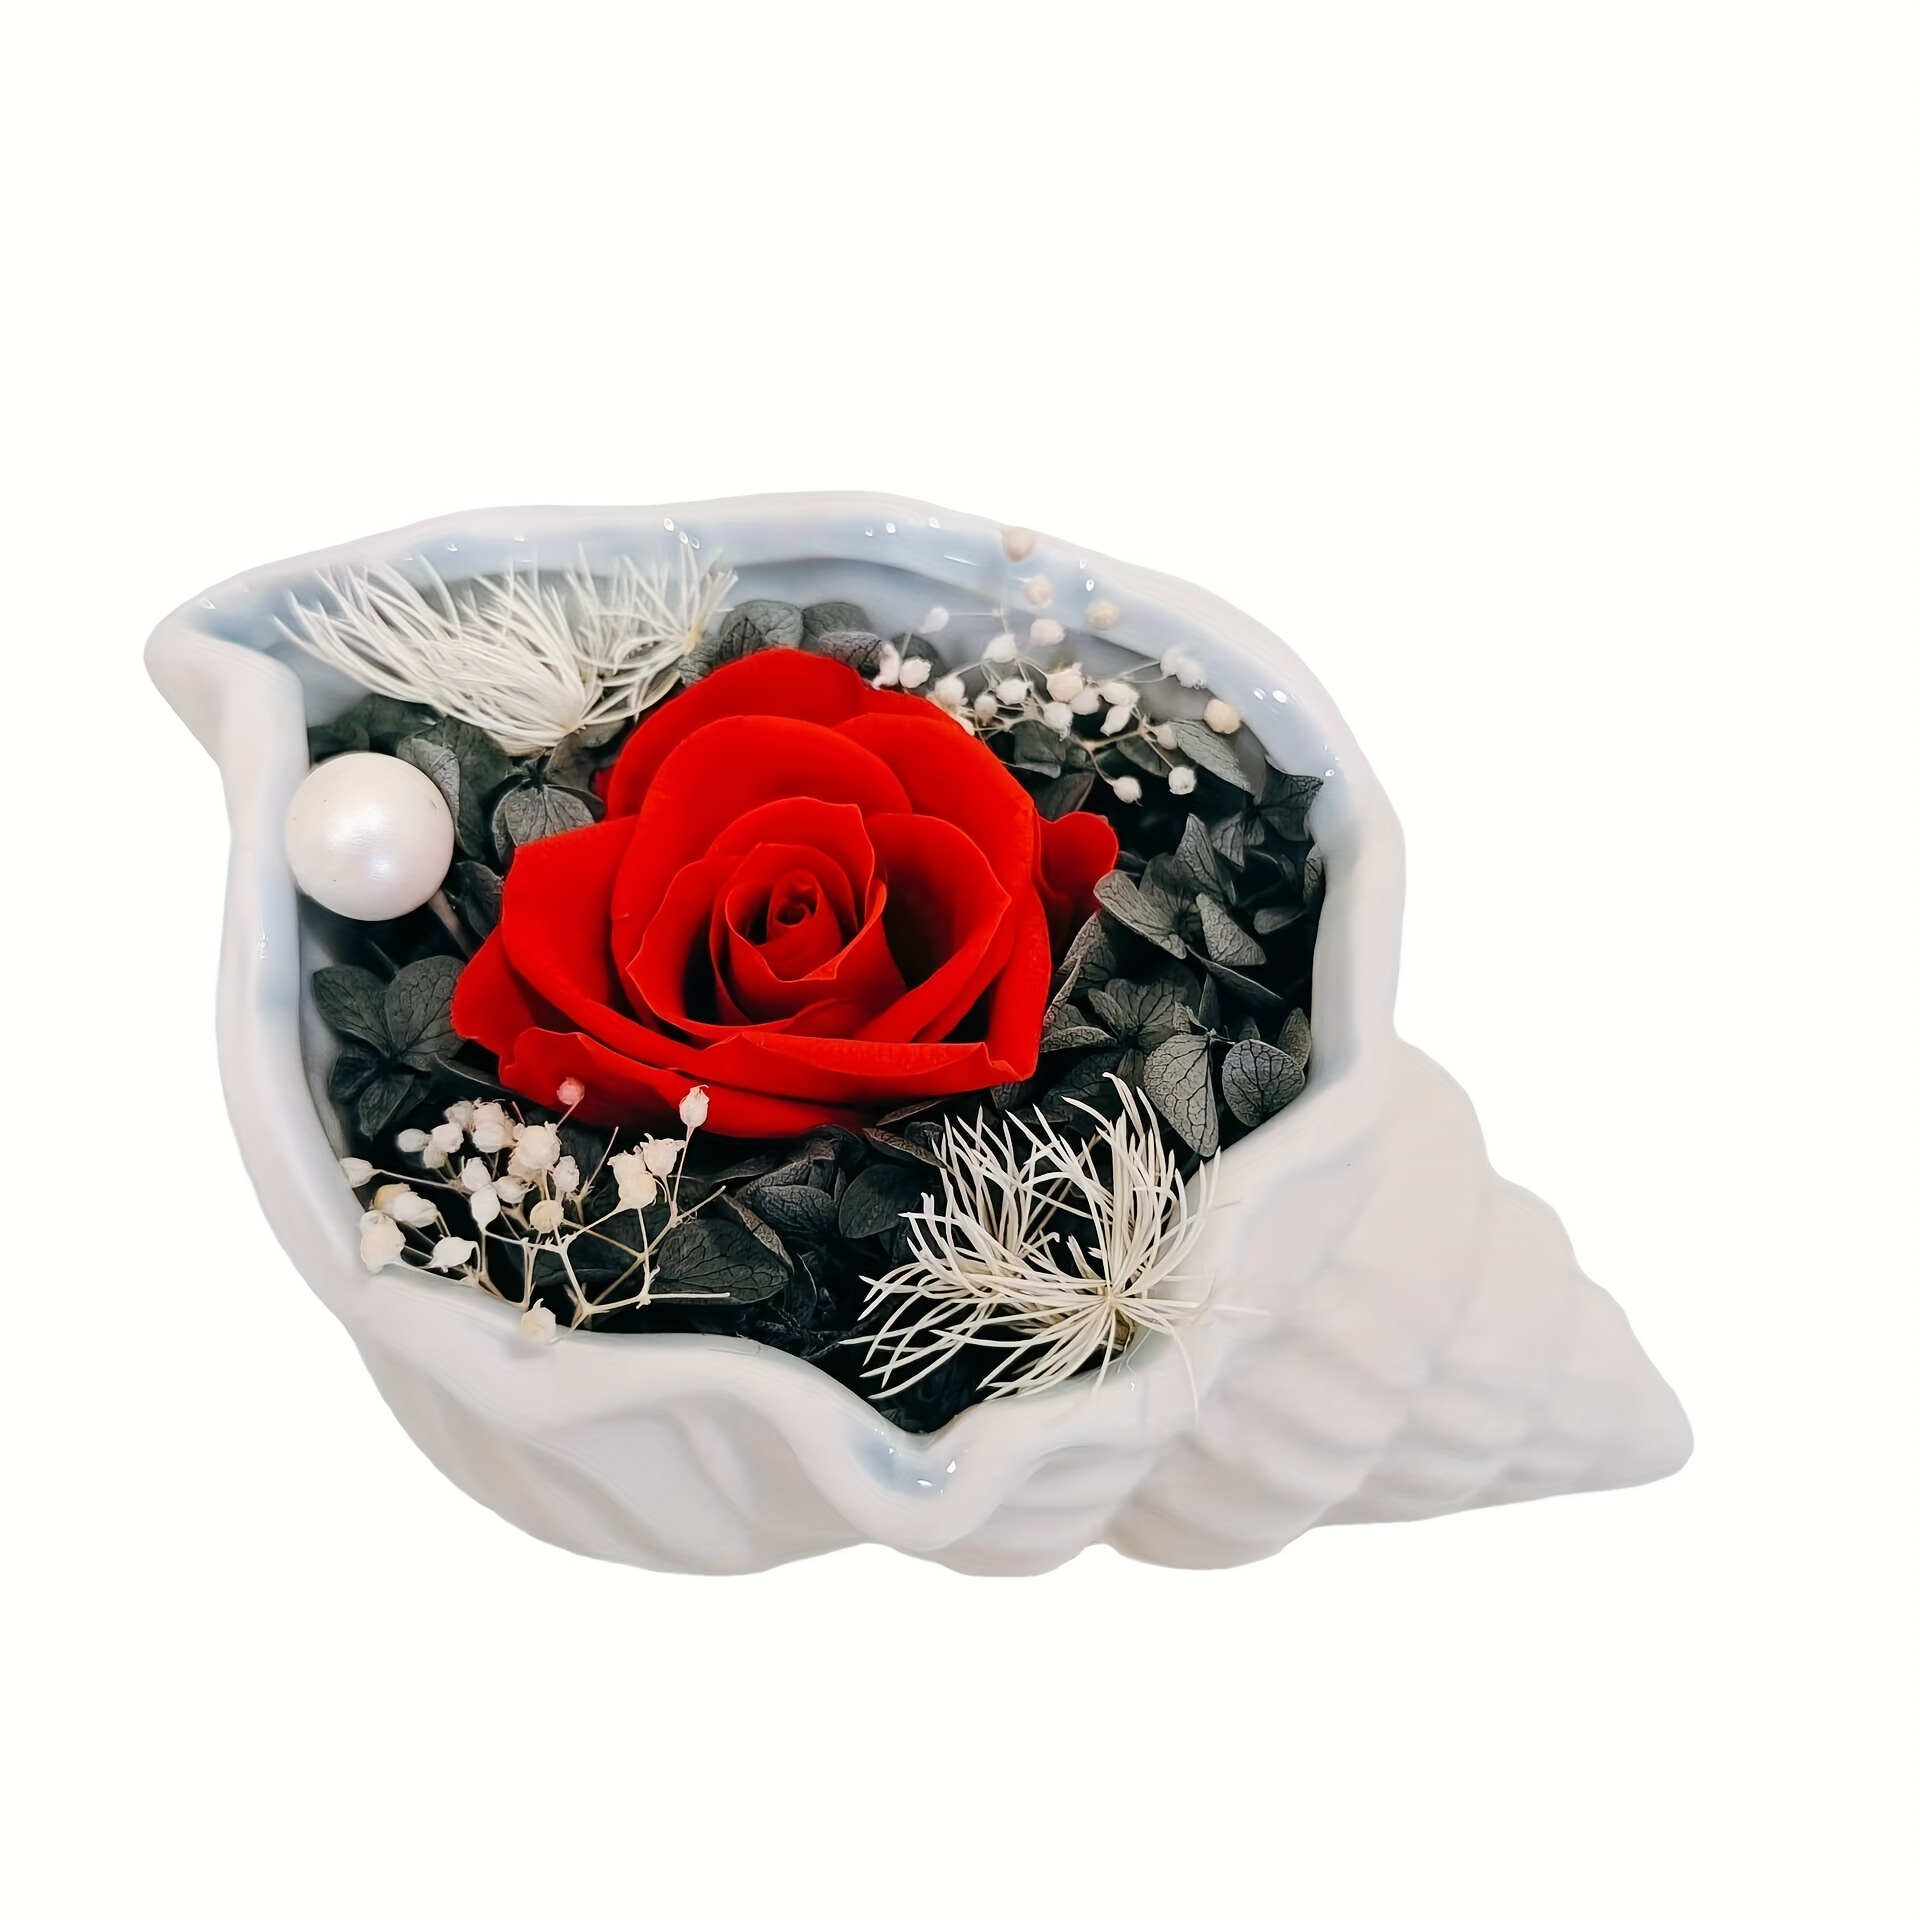 Lksixu Preserved Flower Real Rose, Eternal Immortal Flowers, Best